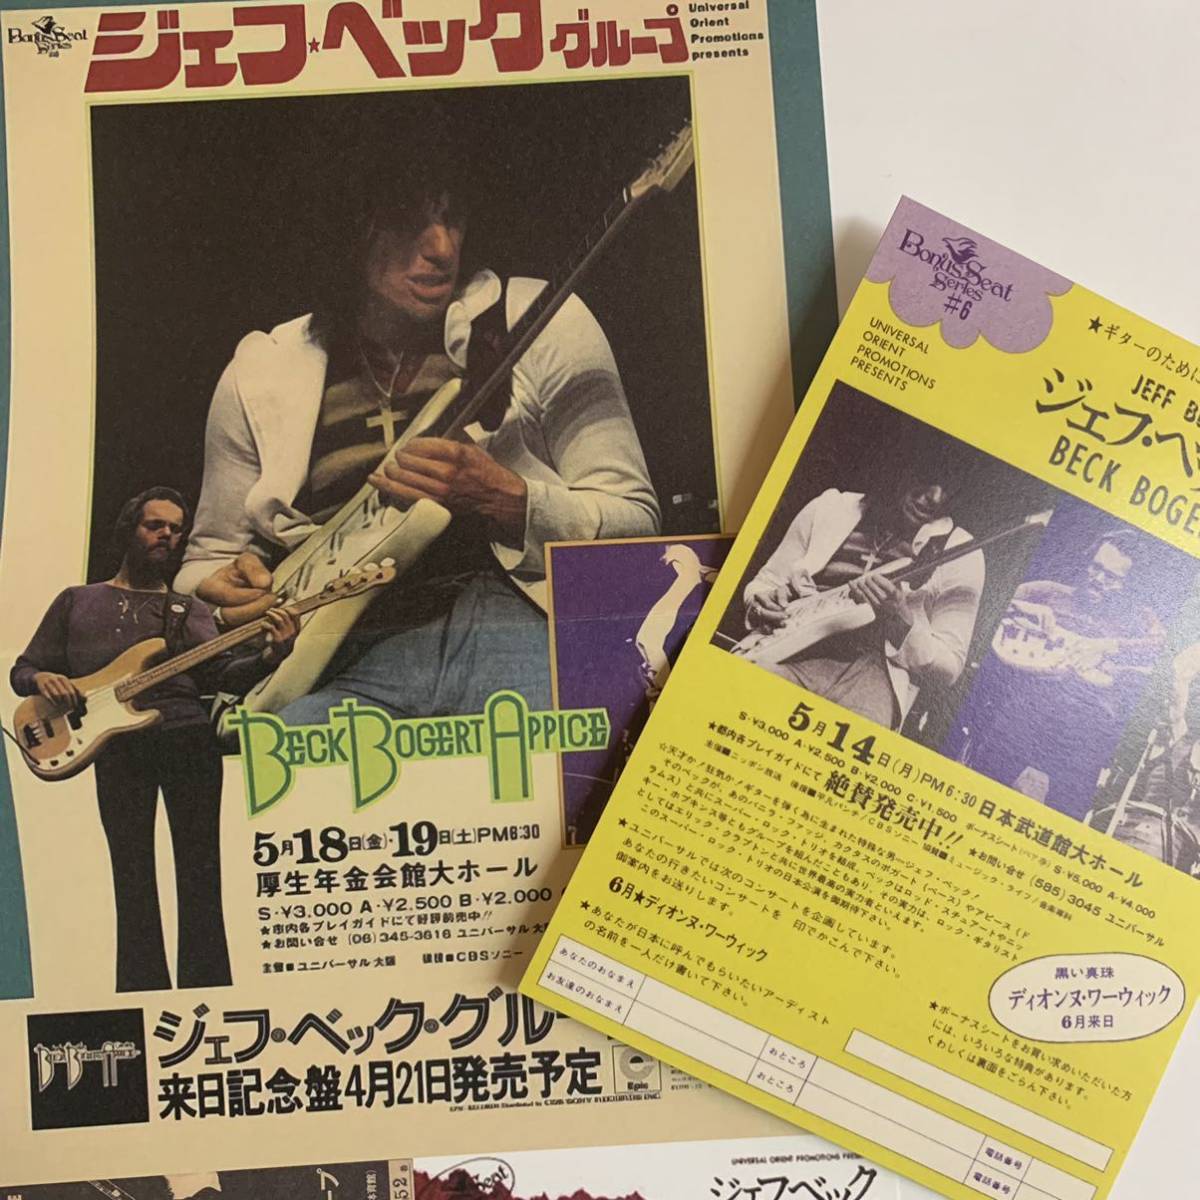 BECK, BOGERT & APPICE / BBA / IN JAPAN “73「ライヴ・イン・ジャパン」7CD BOX SET 武道館新発掘ソースを収録！BBA初のボックスセット！